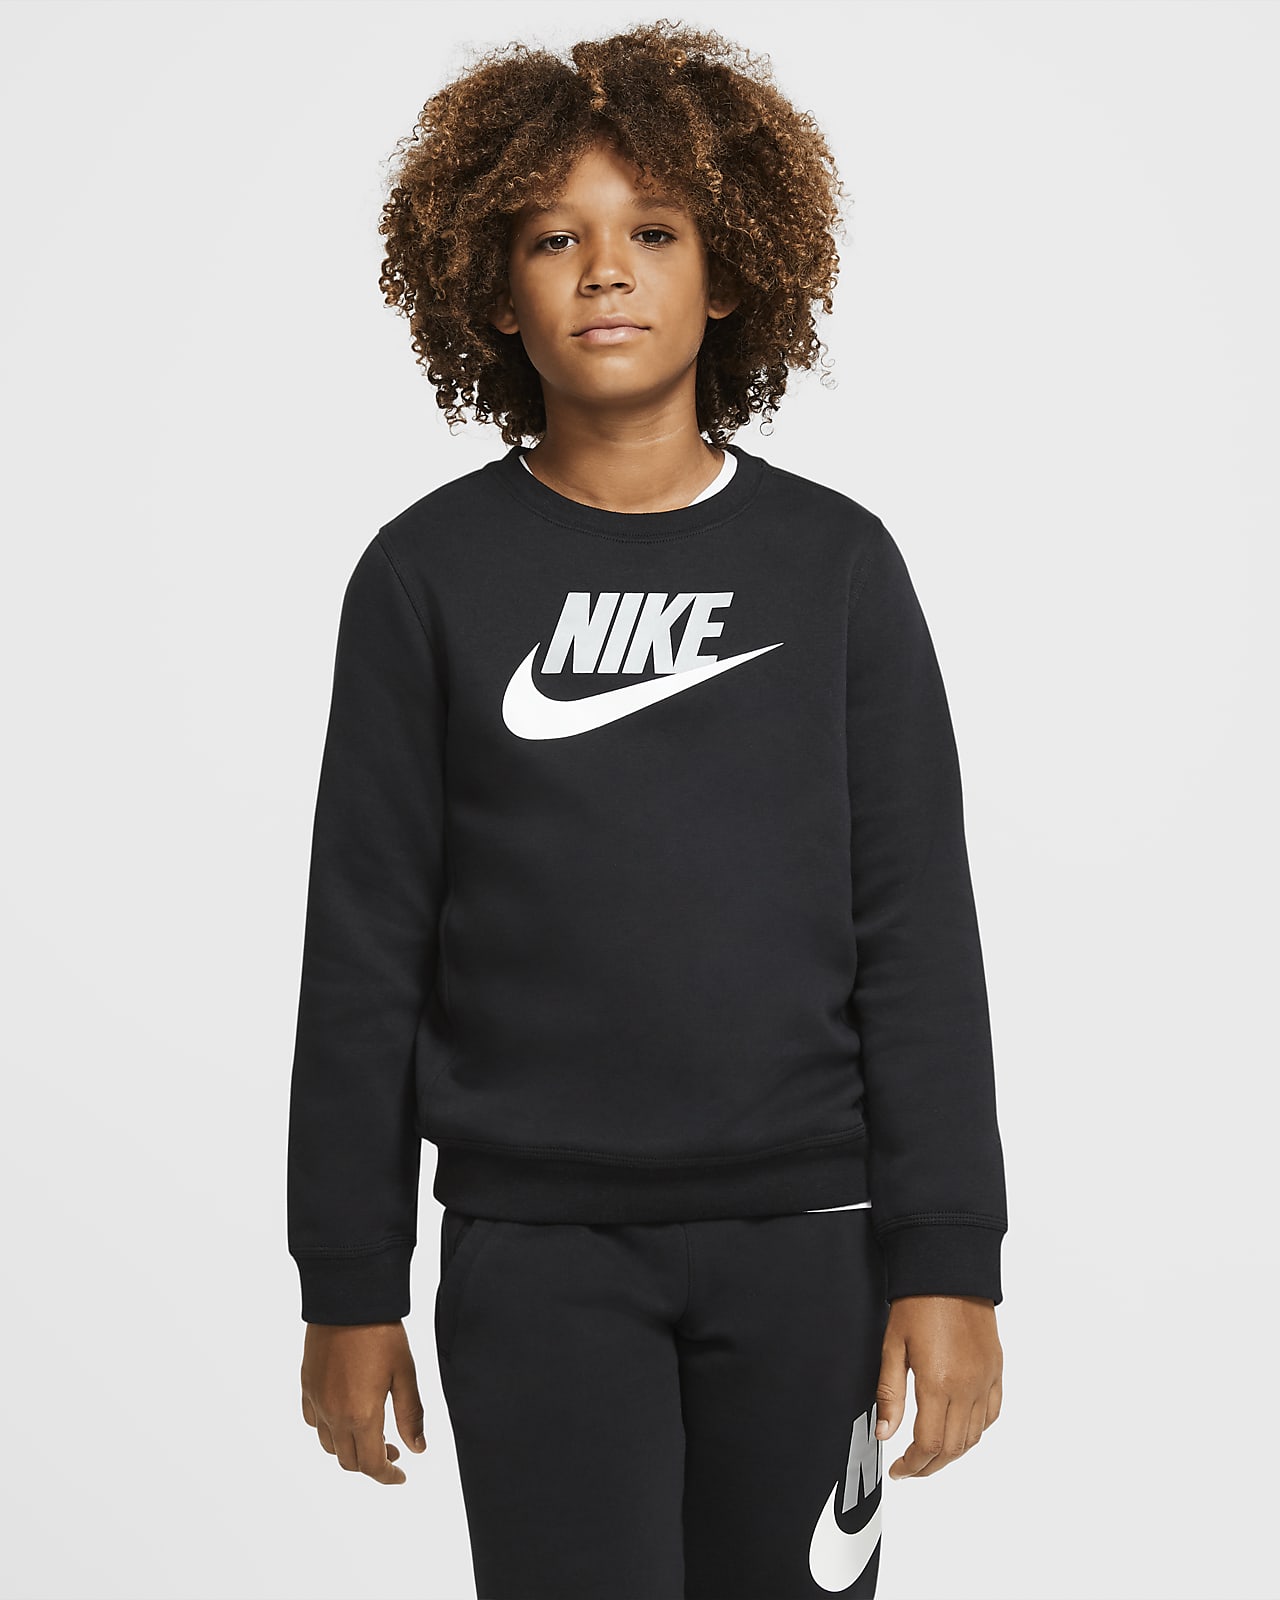 Nike Sportswear Club Fleece Big Kids' (Boys') Crew